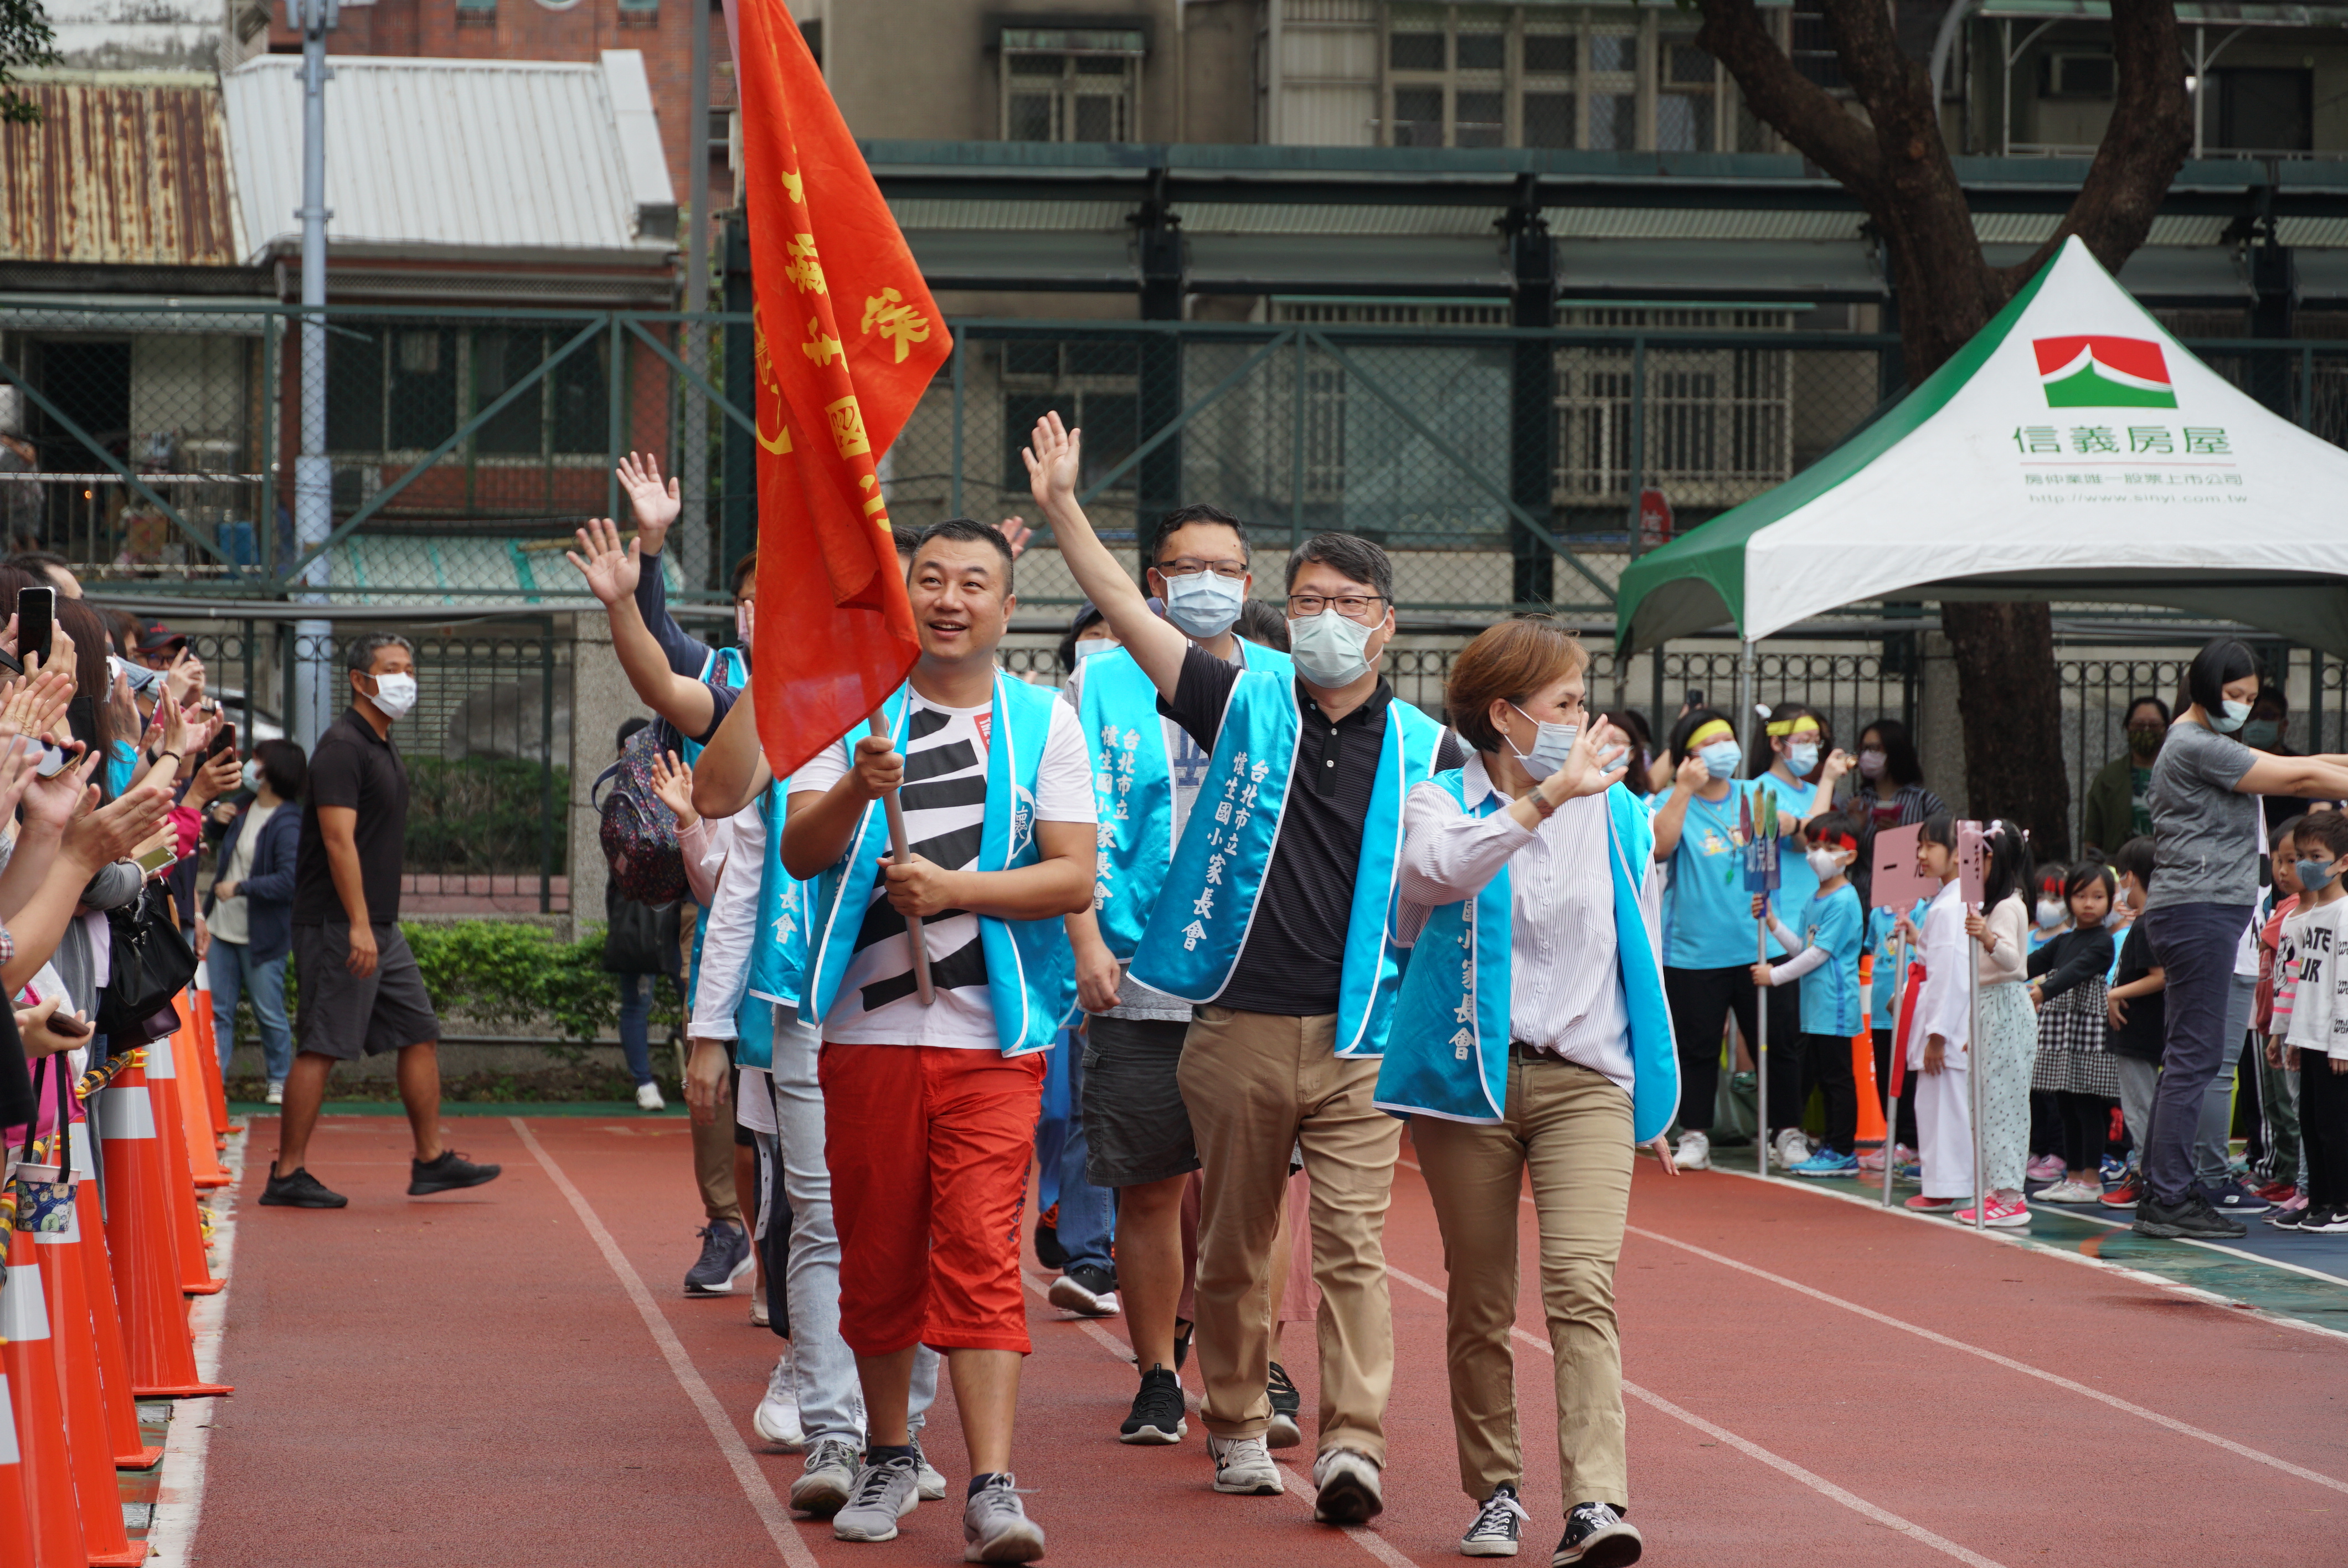 台北市中山區懷生國民小學志工團與學生互動生活照